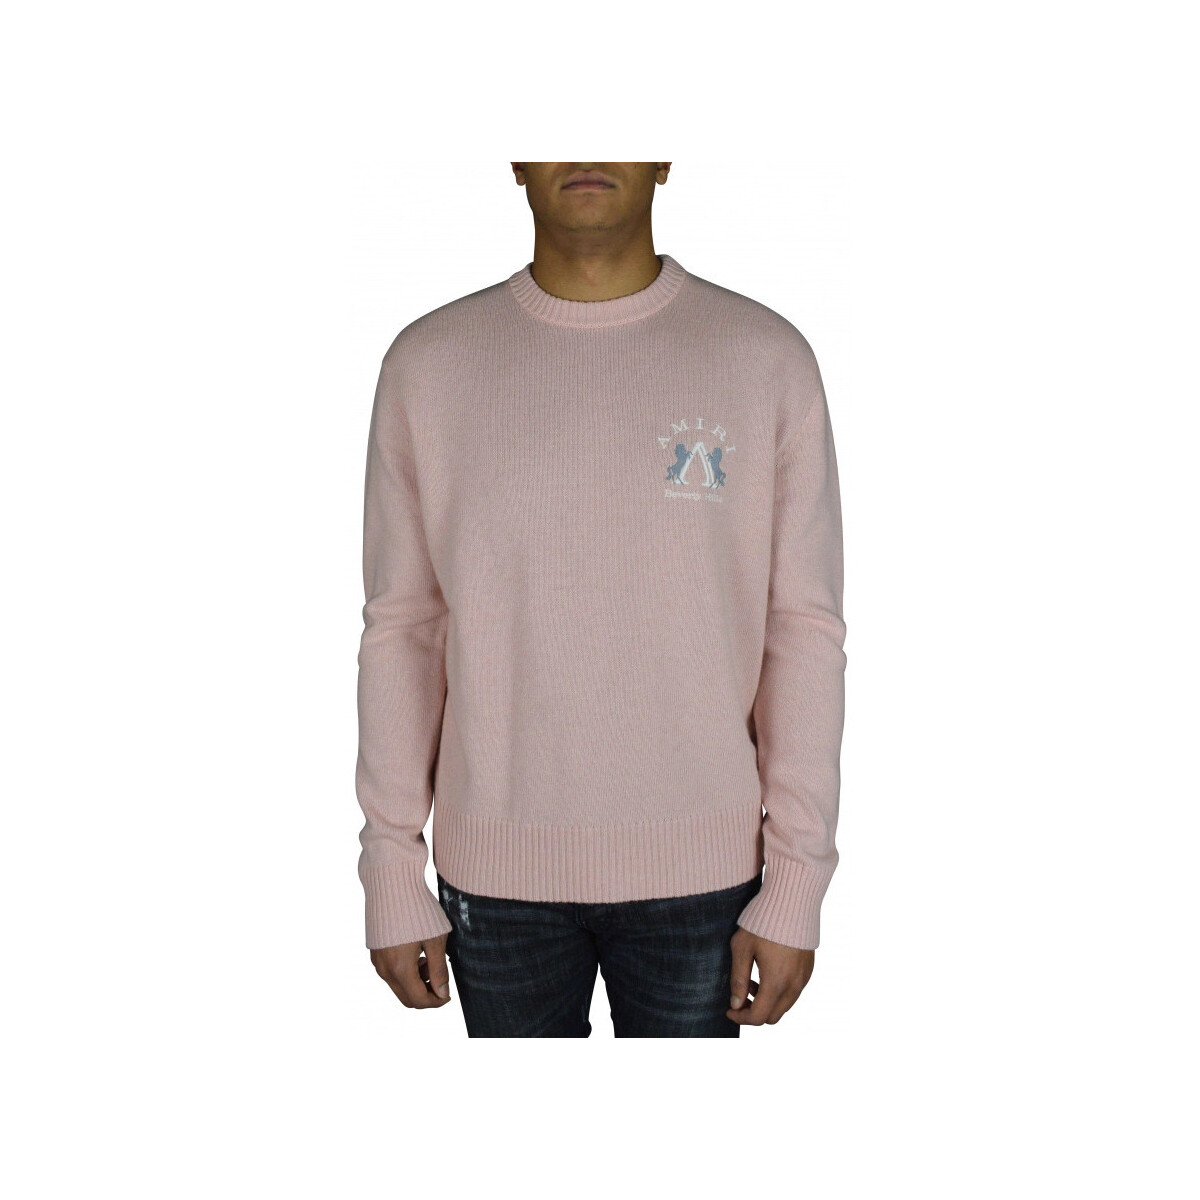 Textiel Heren Sweaters / Sweatshirts Amiri  Roze